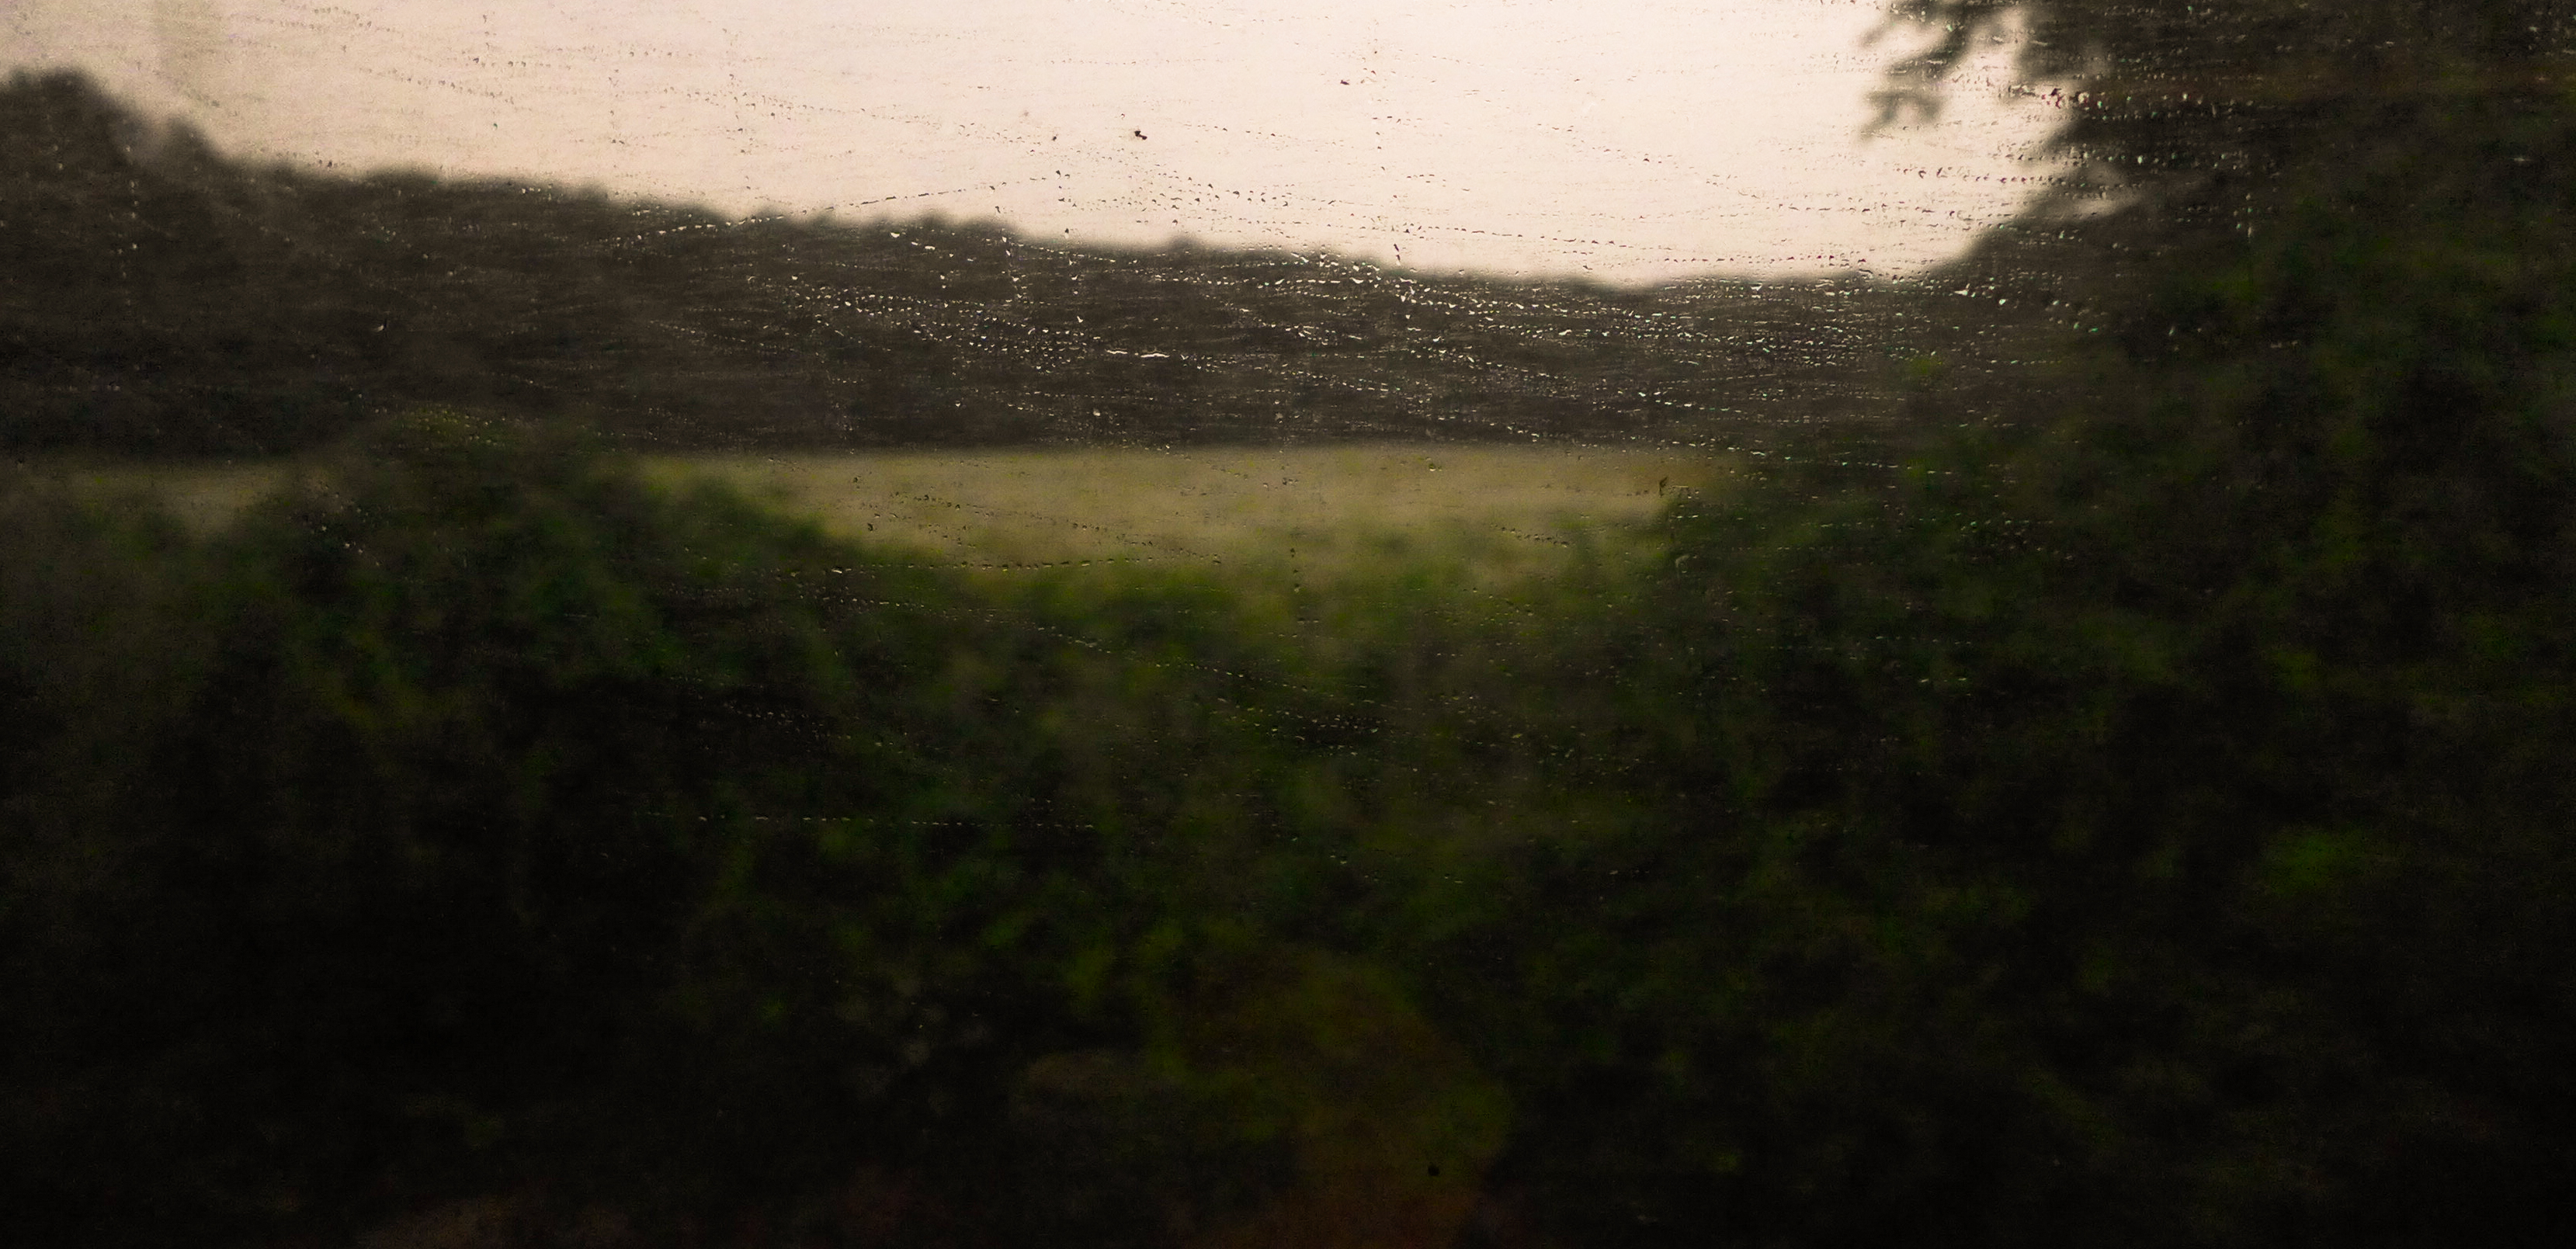 train in rain.jpg